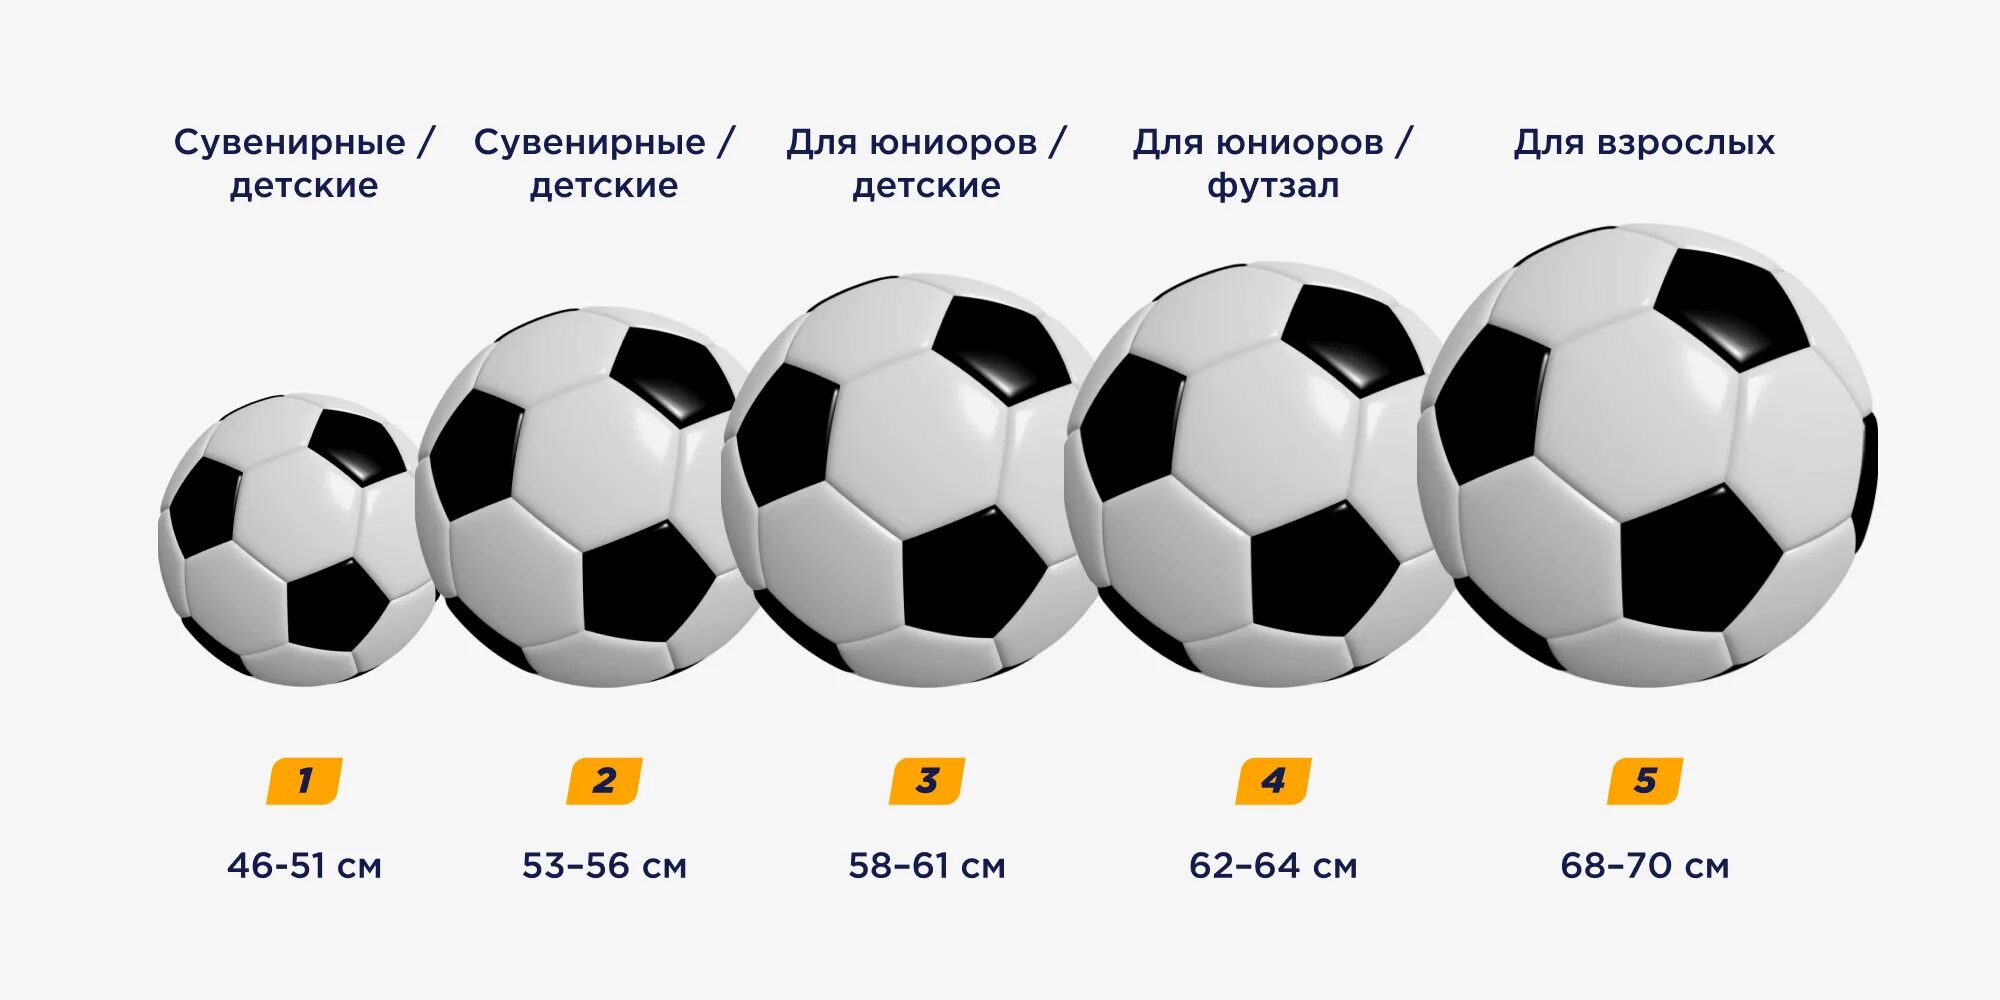 Мяч 5 размера диаметр. Вес футбольного мяча 4 размера. Размер футбольного мяча диаметр. Мяч футбольный размер 5 диаметр.